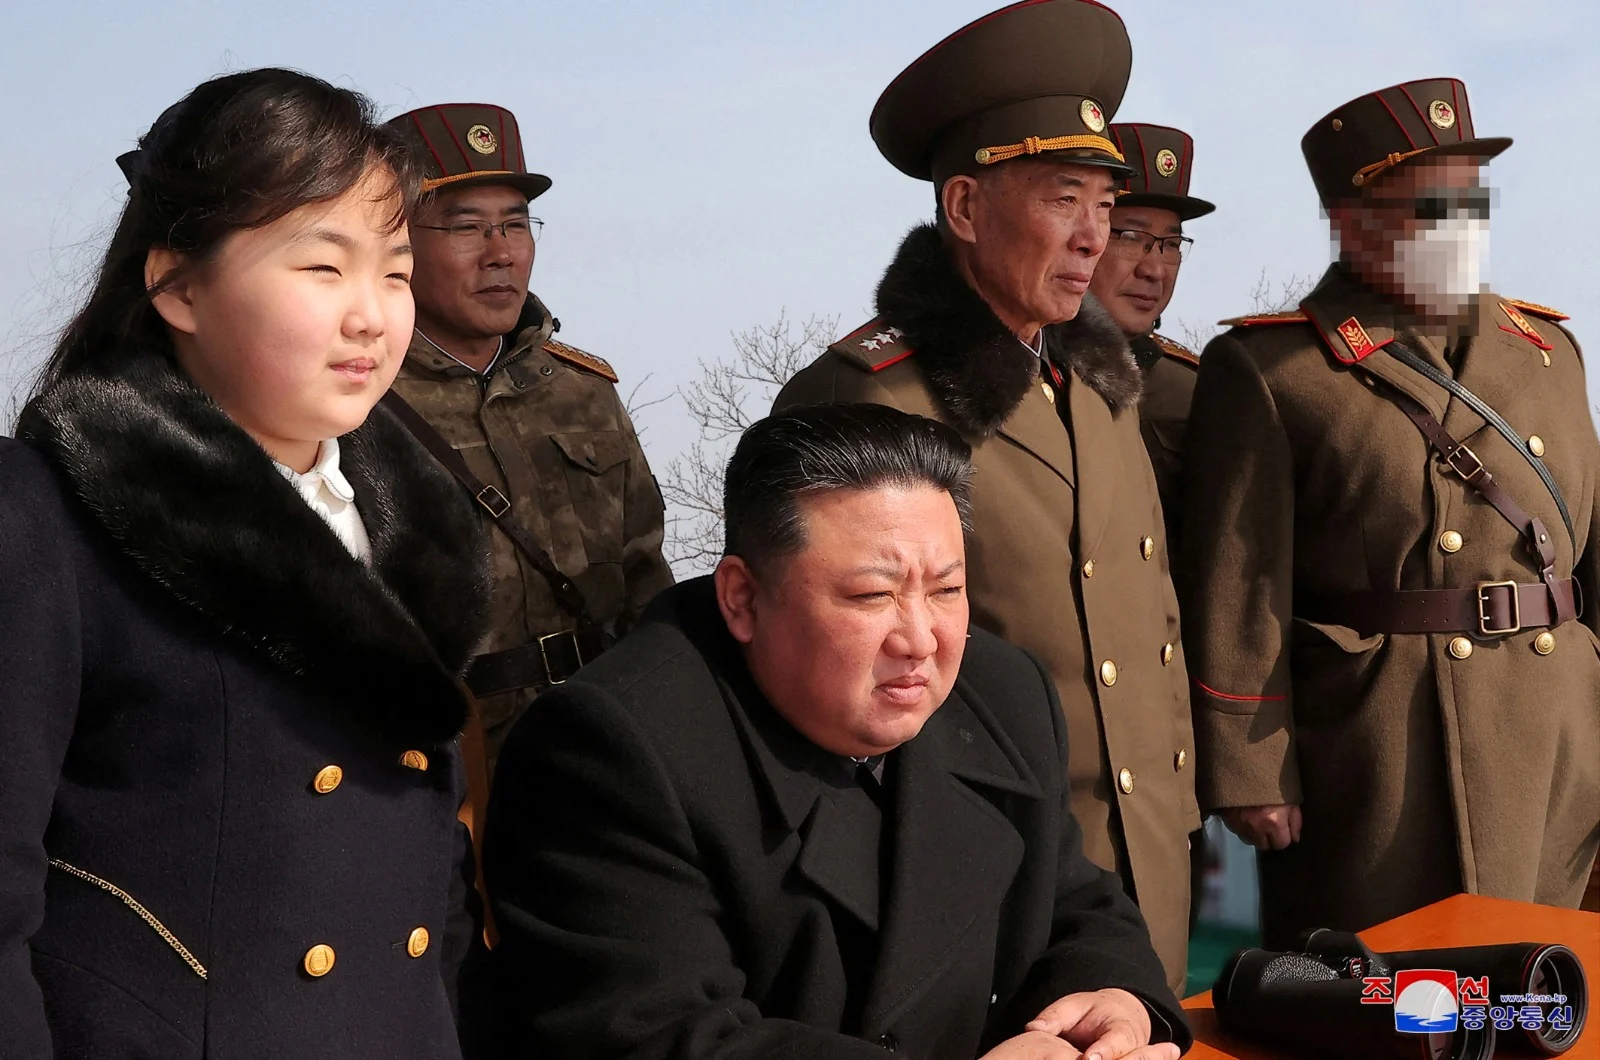 קים ג'ונג און, בתו ובכירים בצבא הצפון הקוריאני צופים בשיגור טילים